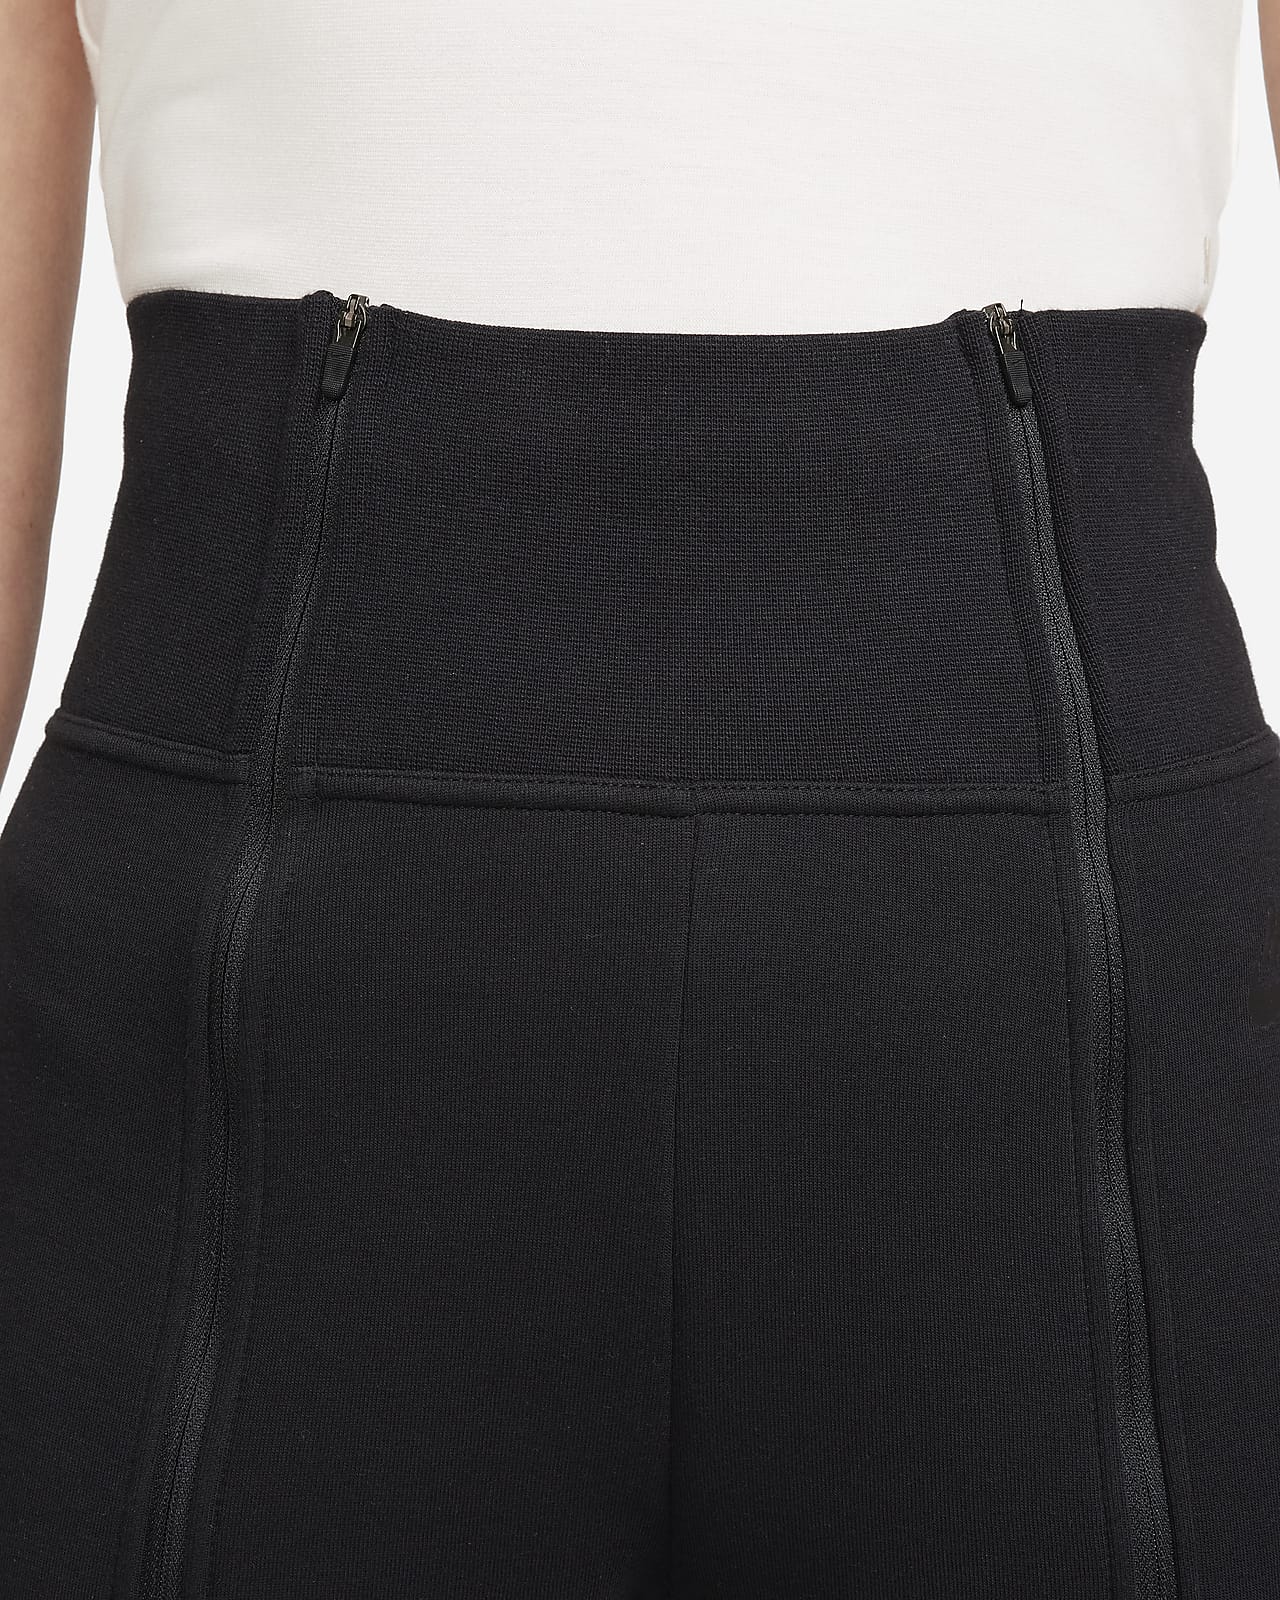 Nike Women's Sportswear Tech Fleece Pants Dark Grey Heather/Matte Silver  BV3472-063, Pants -  Canada